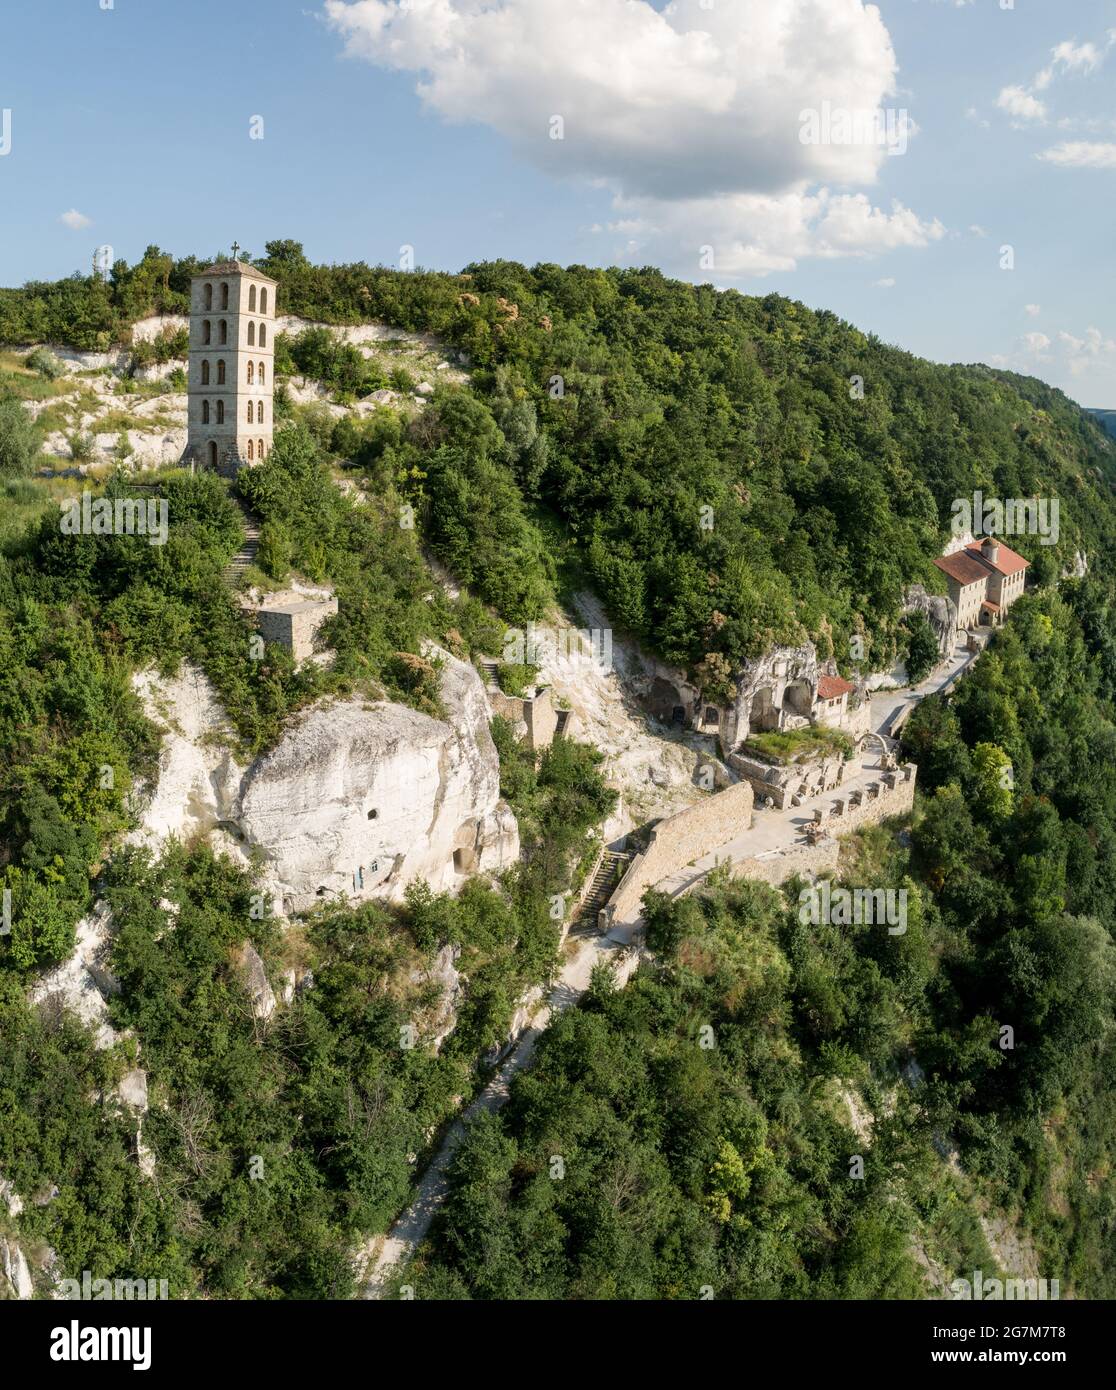 Luftaufnahme des christlich-orthodoxen Klosters von Lyadova im Dorf Lyadova, Region Vinnytsa, Ukraine, 2021. Reiseziele in Ukraine auf Podillya. Stockfoto